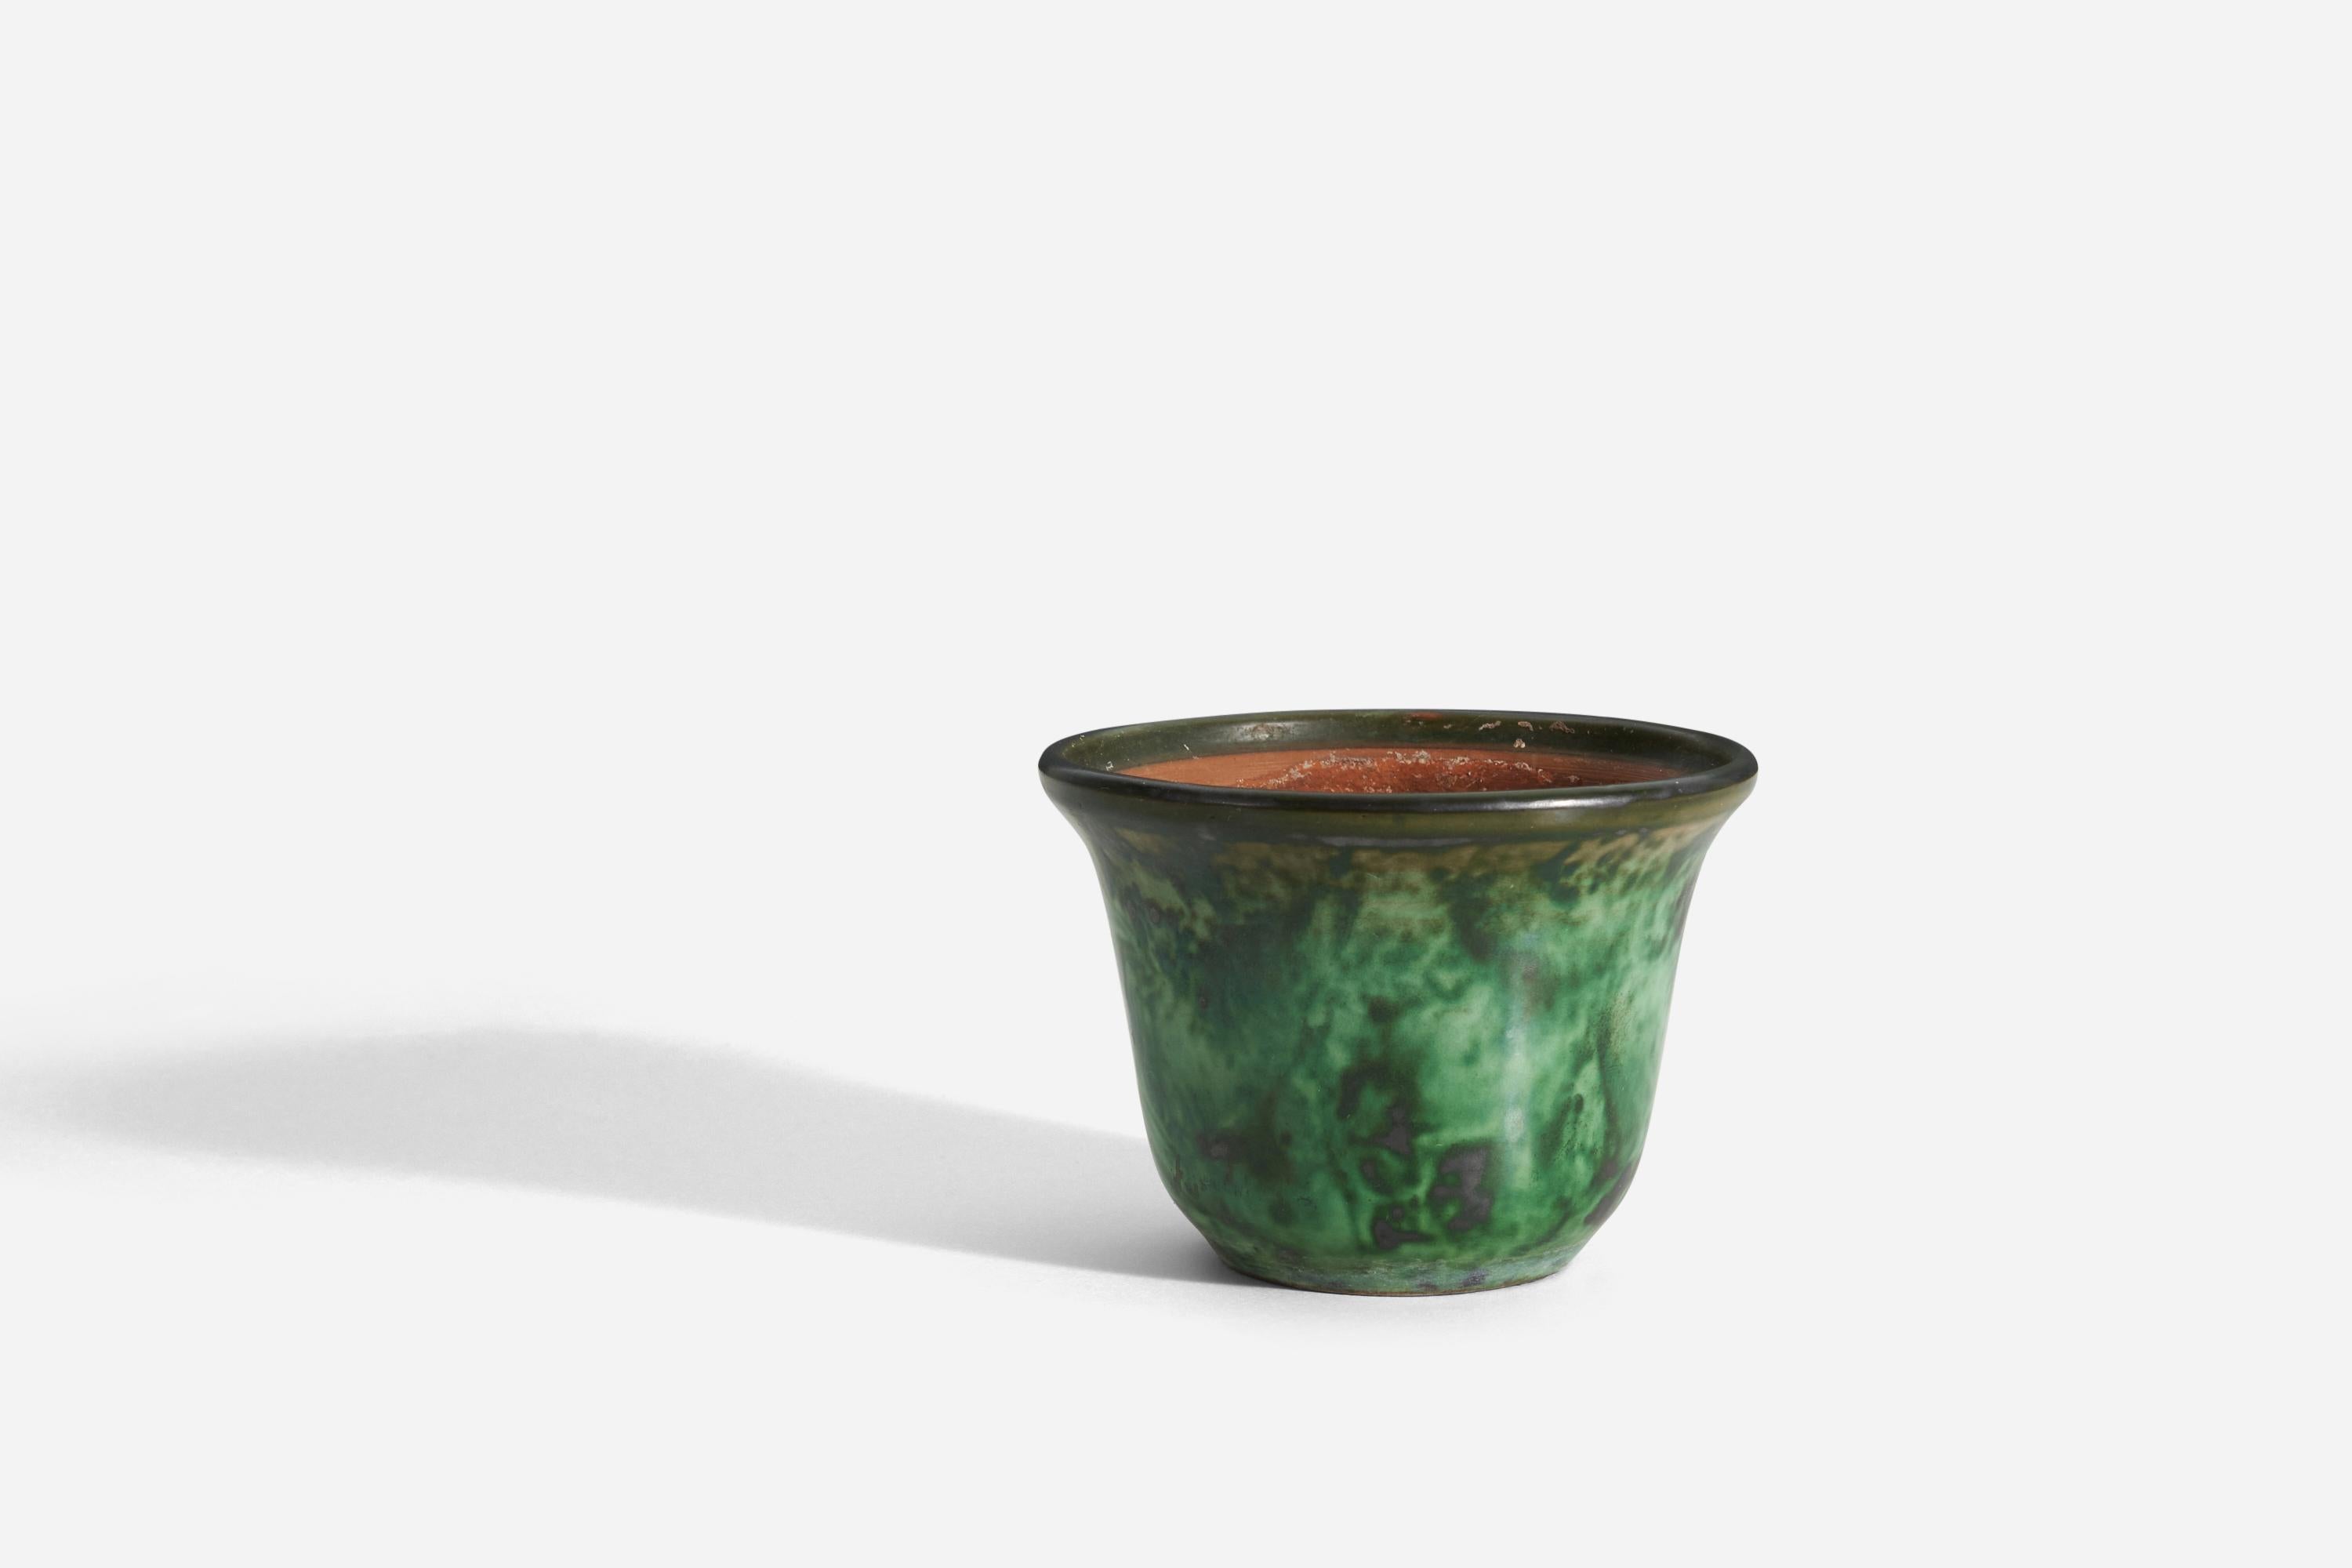 Un vase / jardinière / pot de fleurs en céramique, par Nittsjö. Produit en Suède, années 1940. Signé. Faïence à glaçure verte.
 